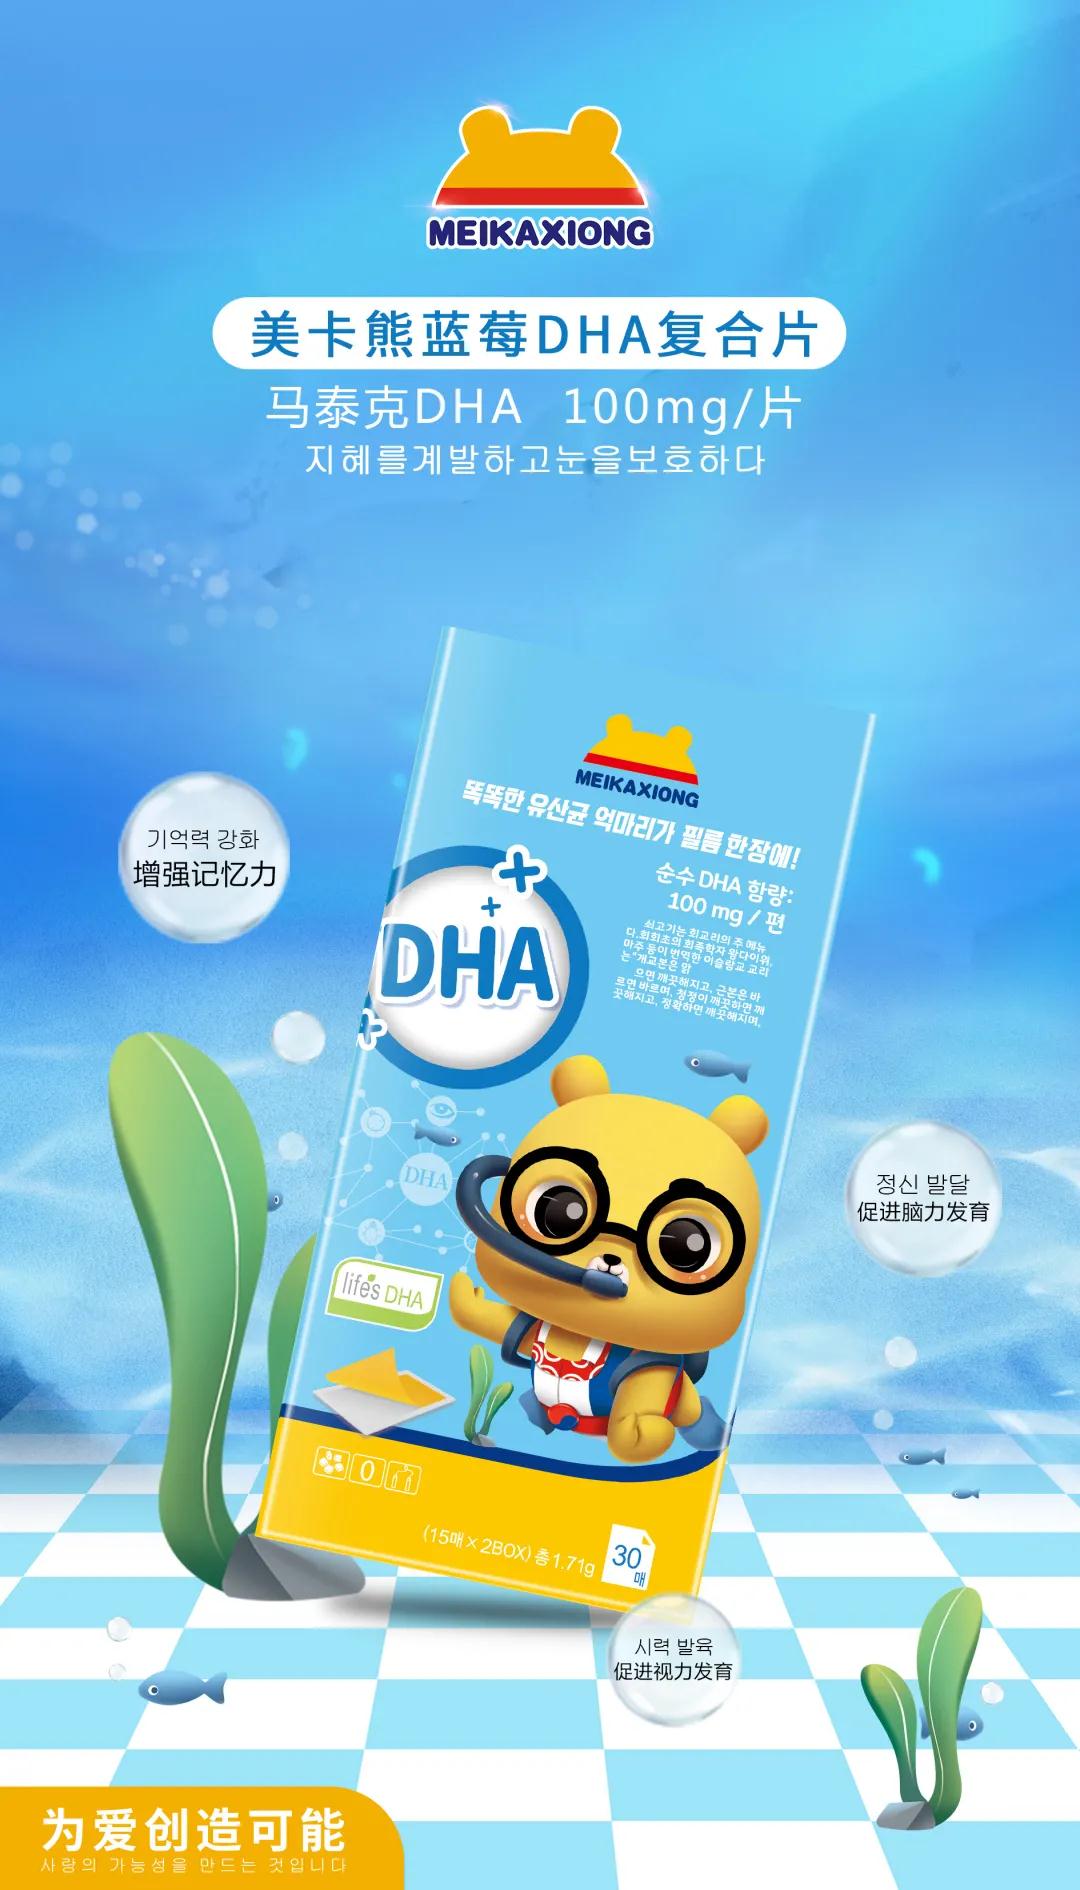 进口DHA代加工、自有工厂OEM婴童系列贴牌